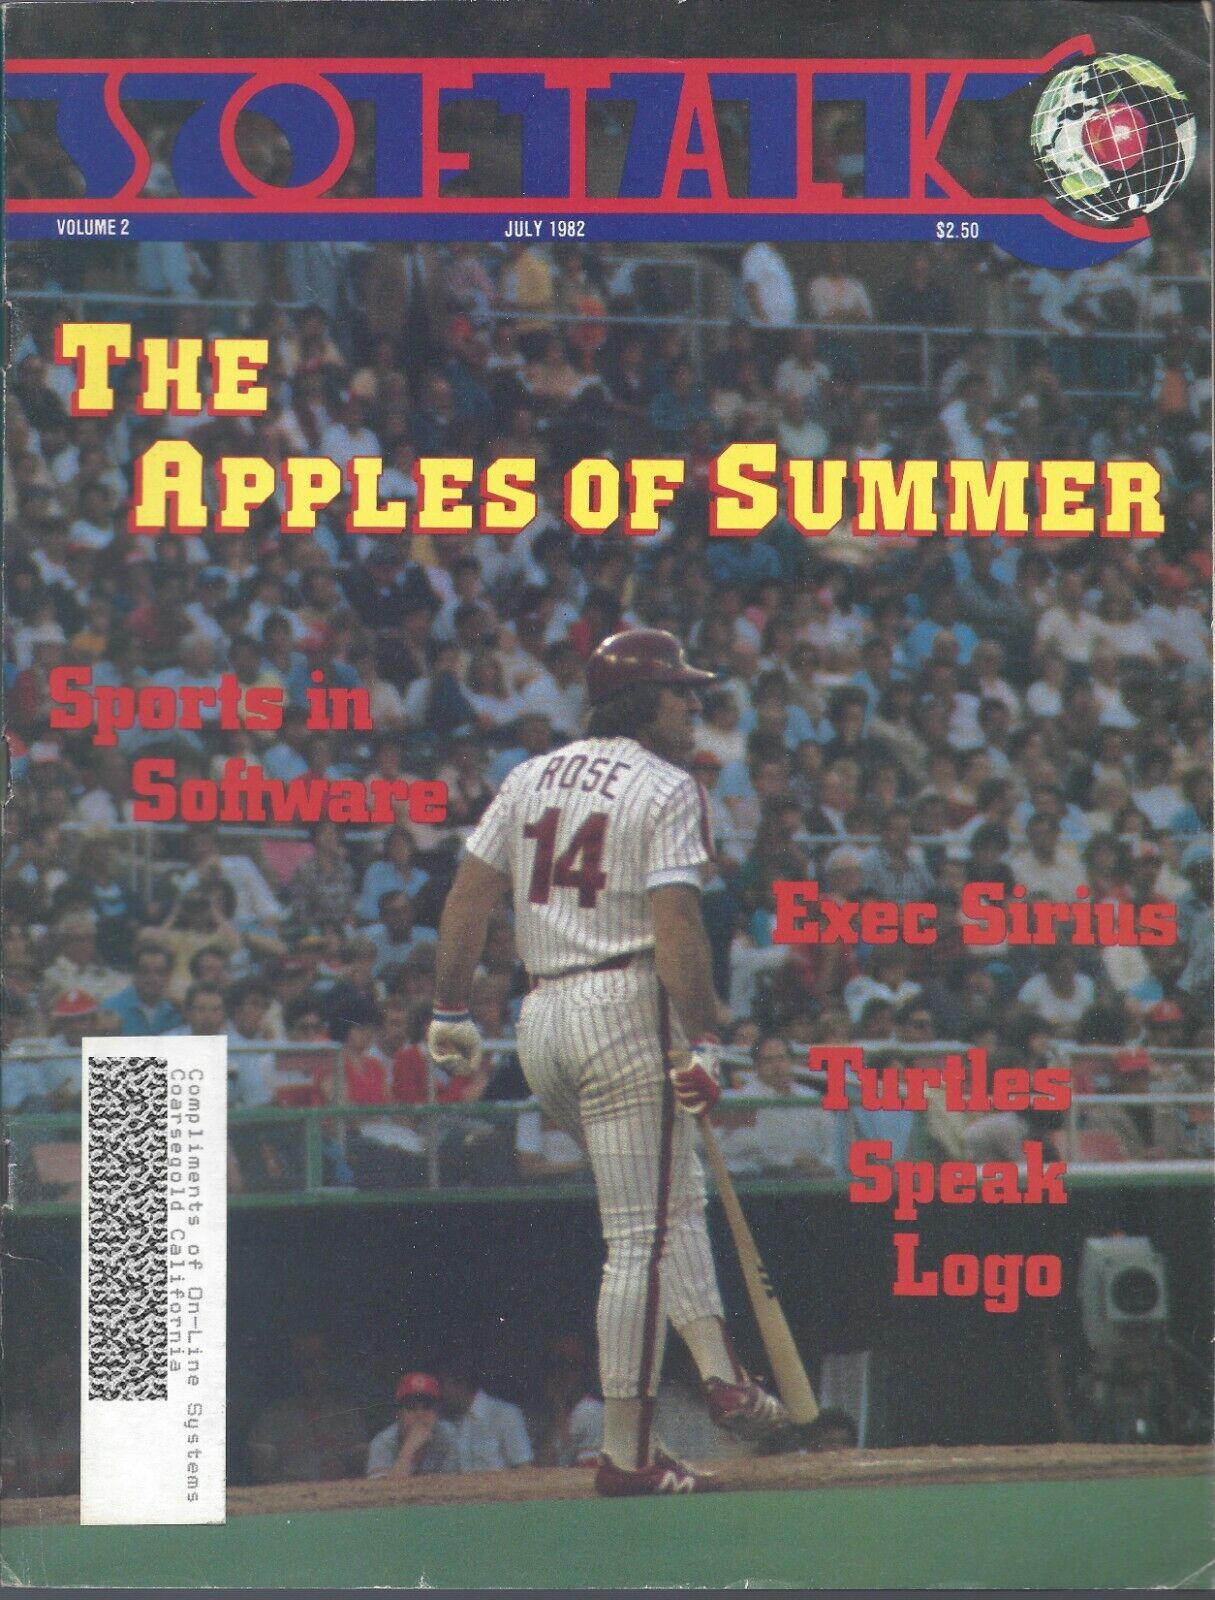 Softalk Magazine, July 1982, for Apple II II+ IIe IIc IIgs